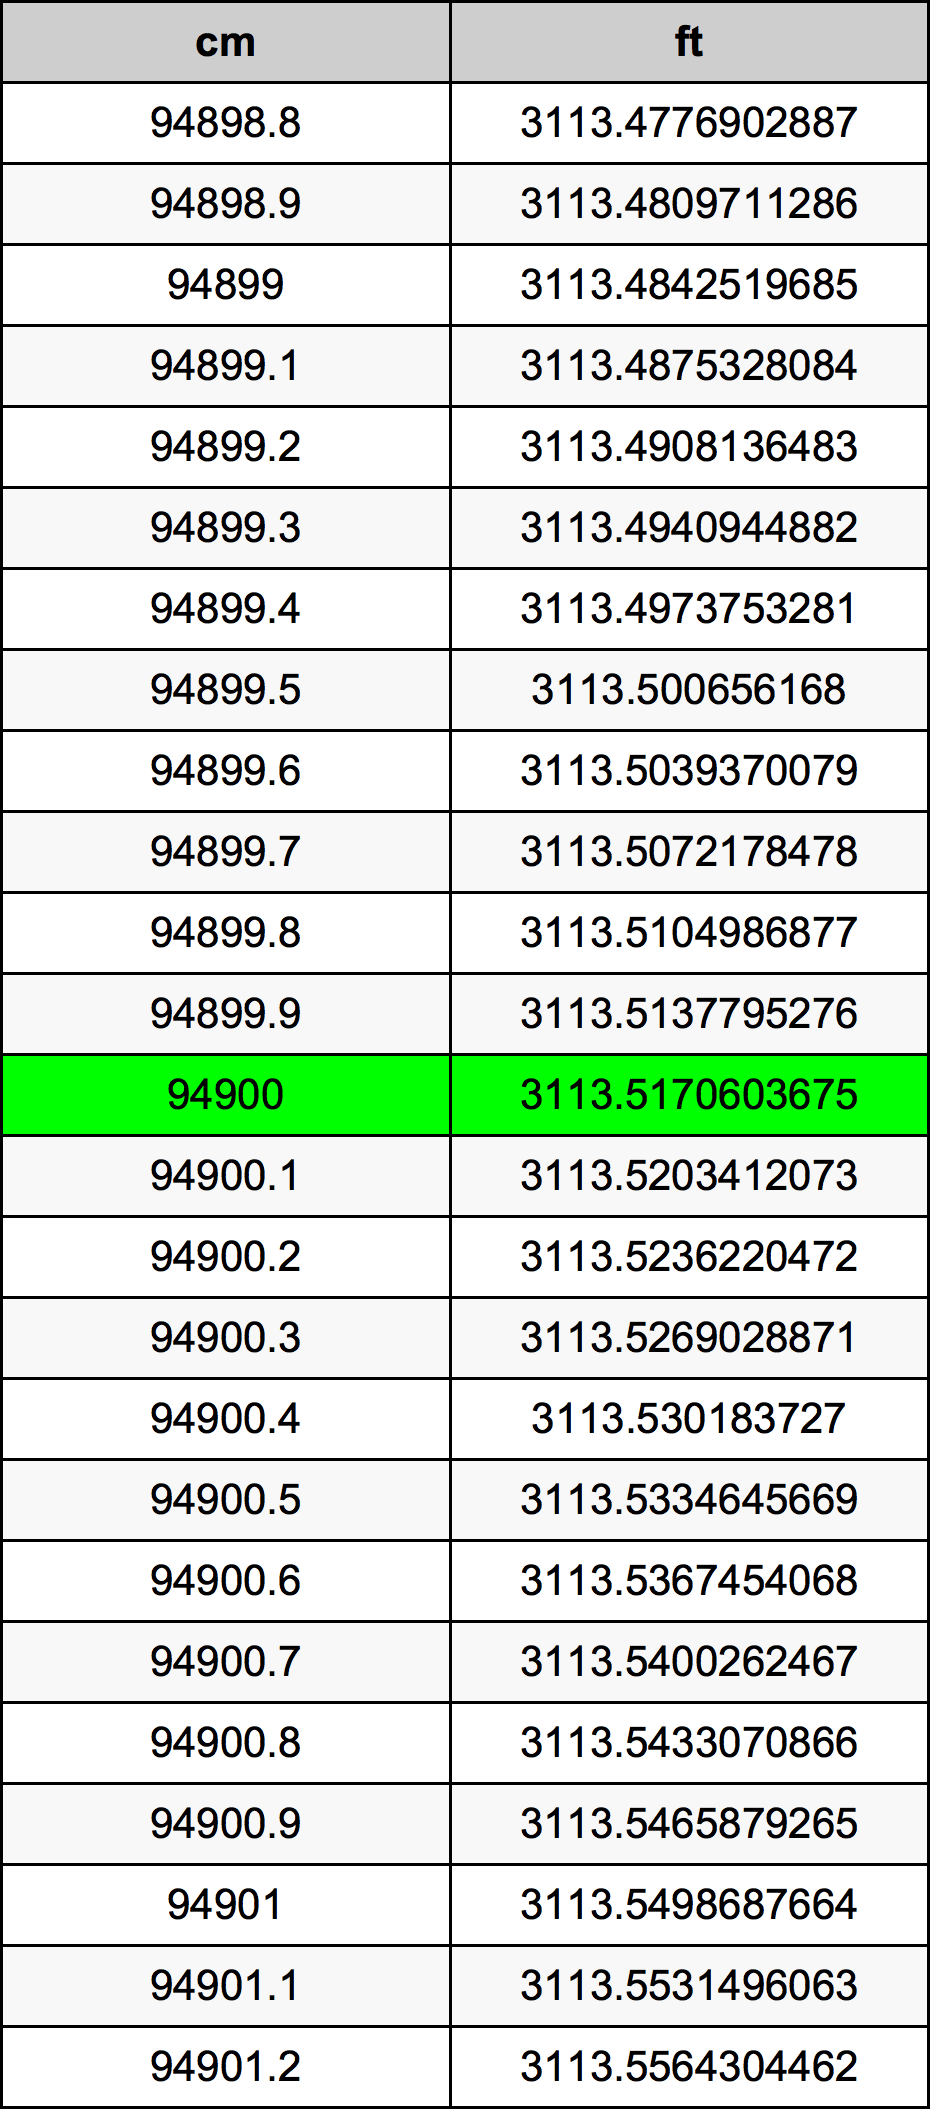 94900 ċentimetru konverżjoni tabella